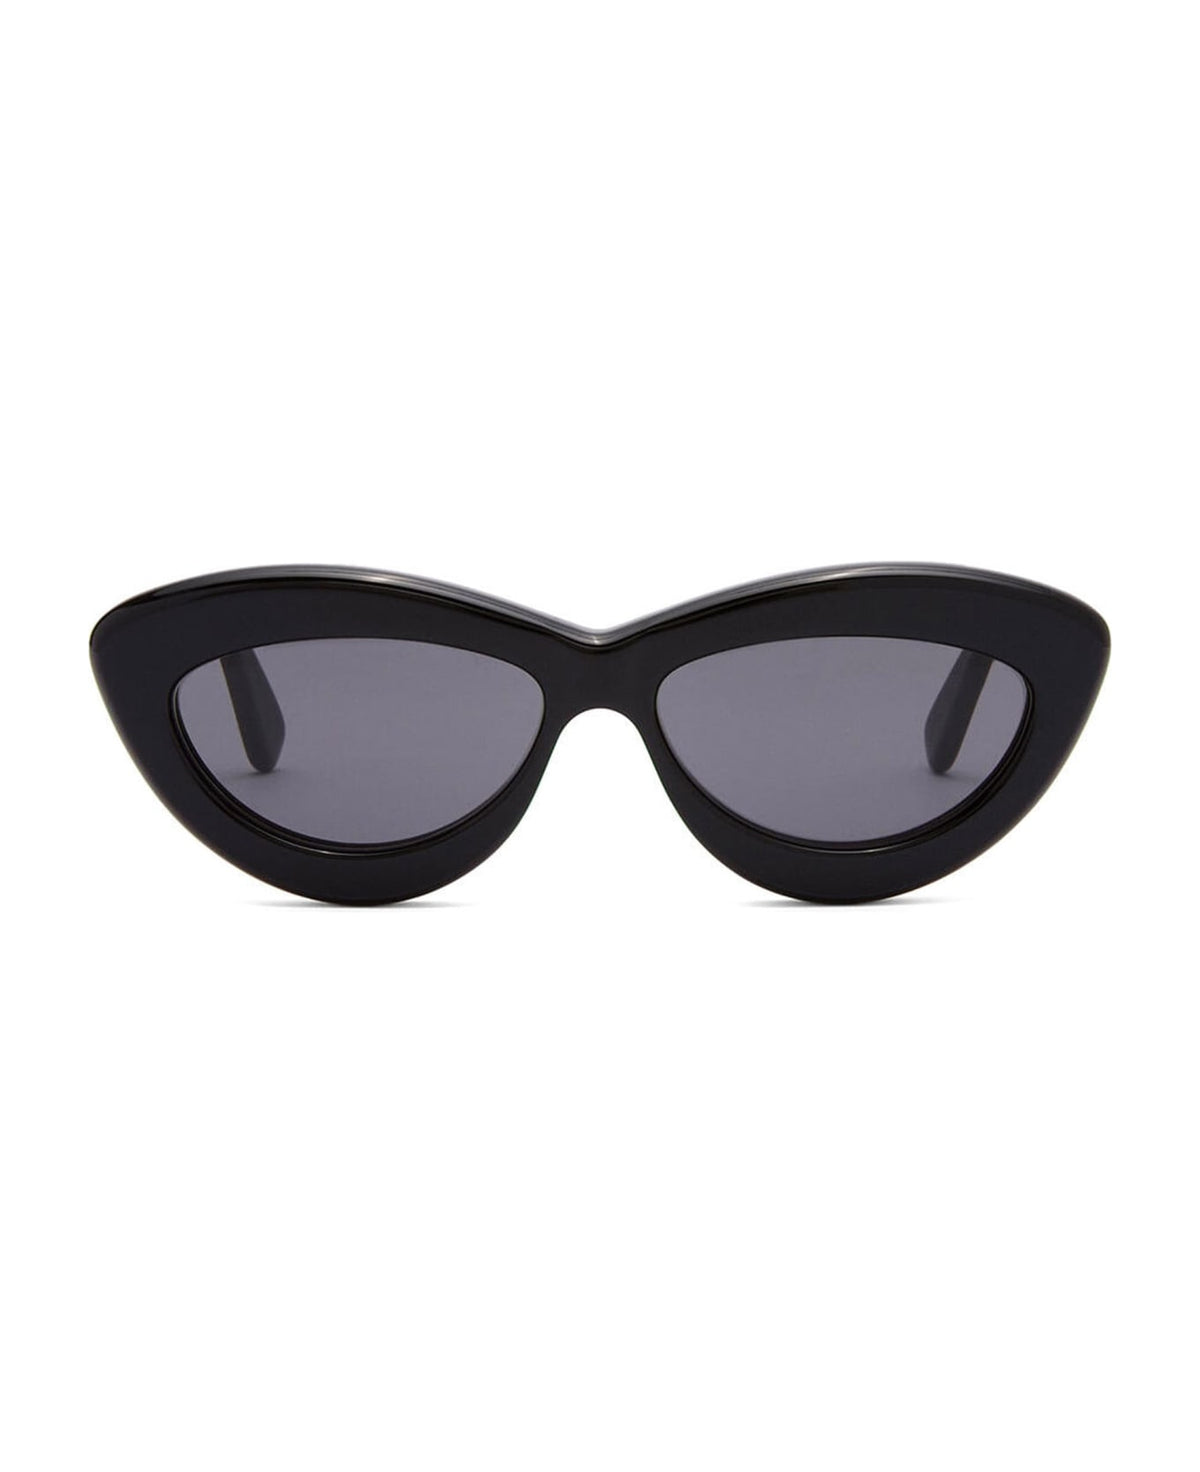 Lw40096i - Black Sunglasses